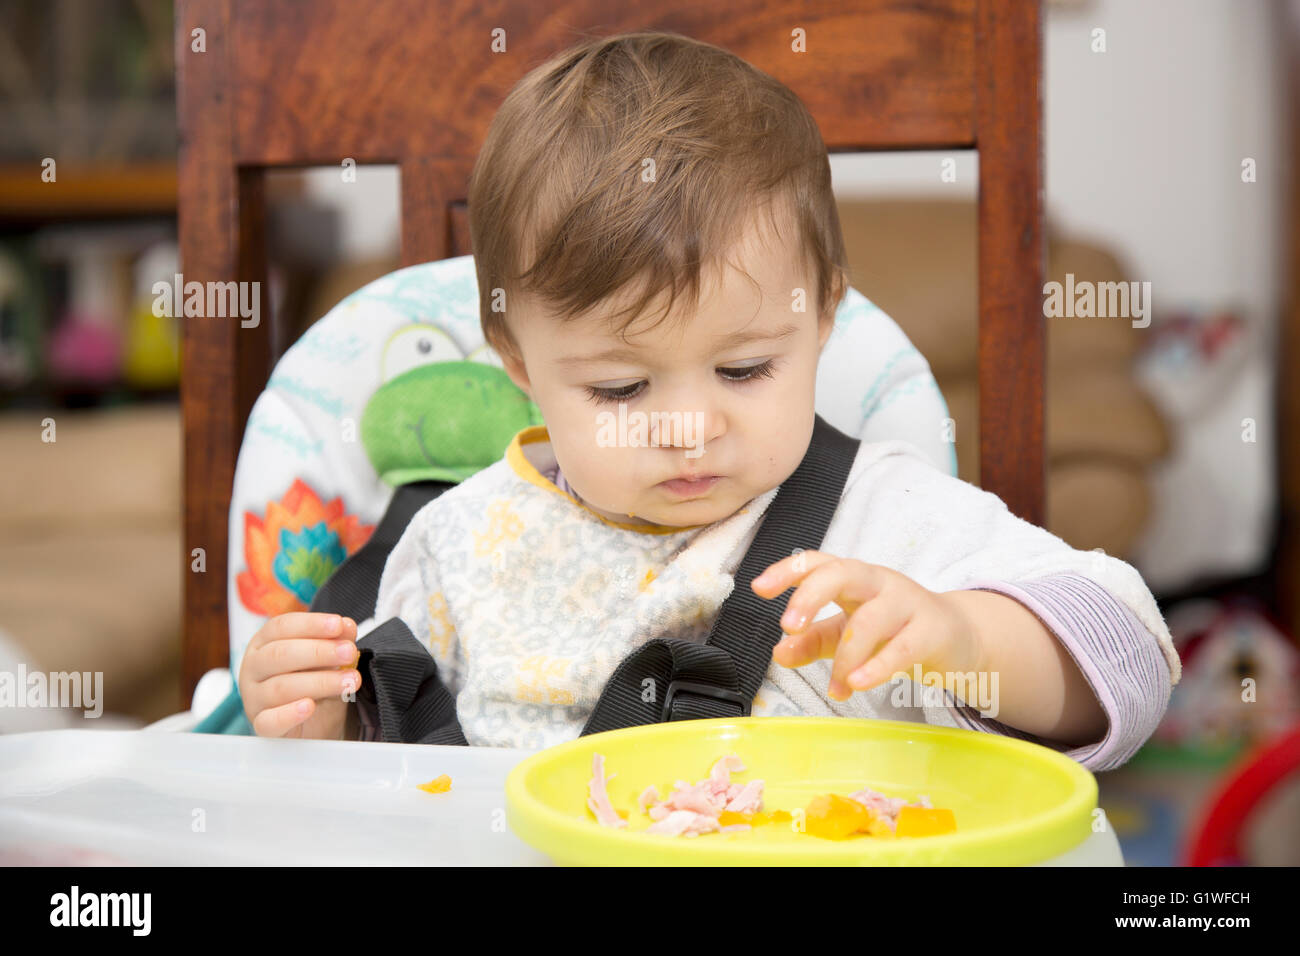 Portrait de peu d'un an bébé à table en train de manger la nourriture dans une assiette avec la main Banque D'Images